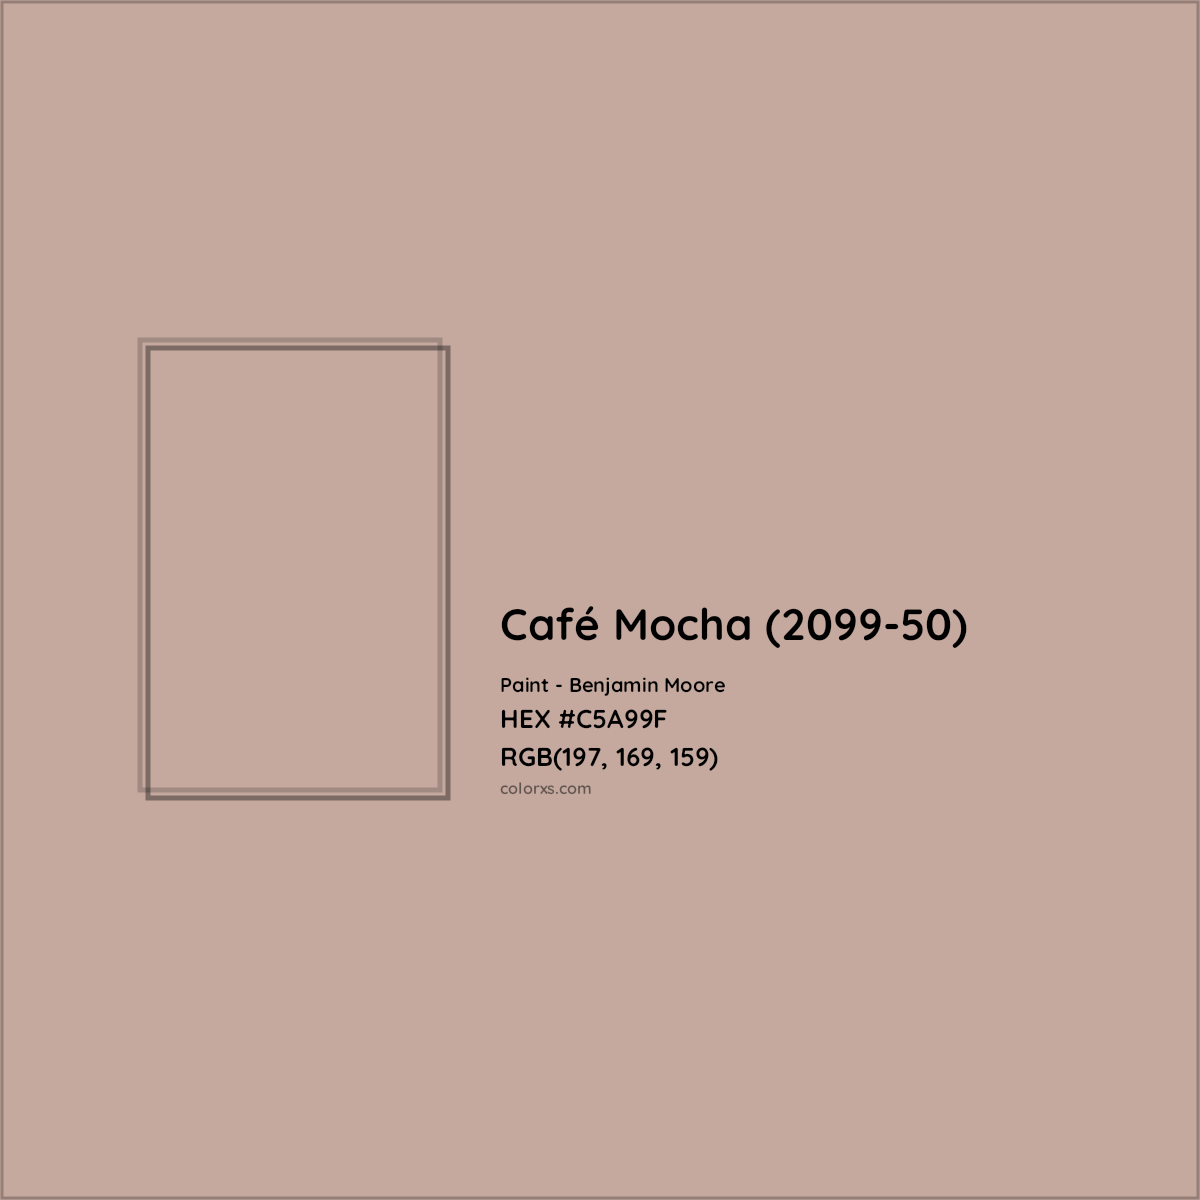 HEX #C5A99F Café Mocha (2099-50) Paint Benjamin Moore - Color Code